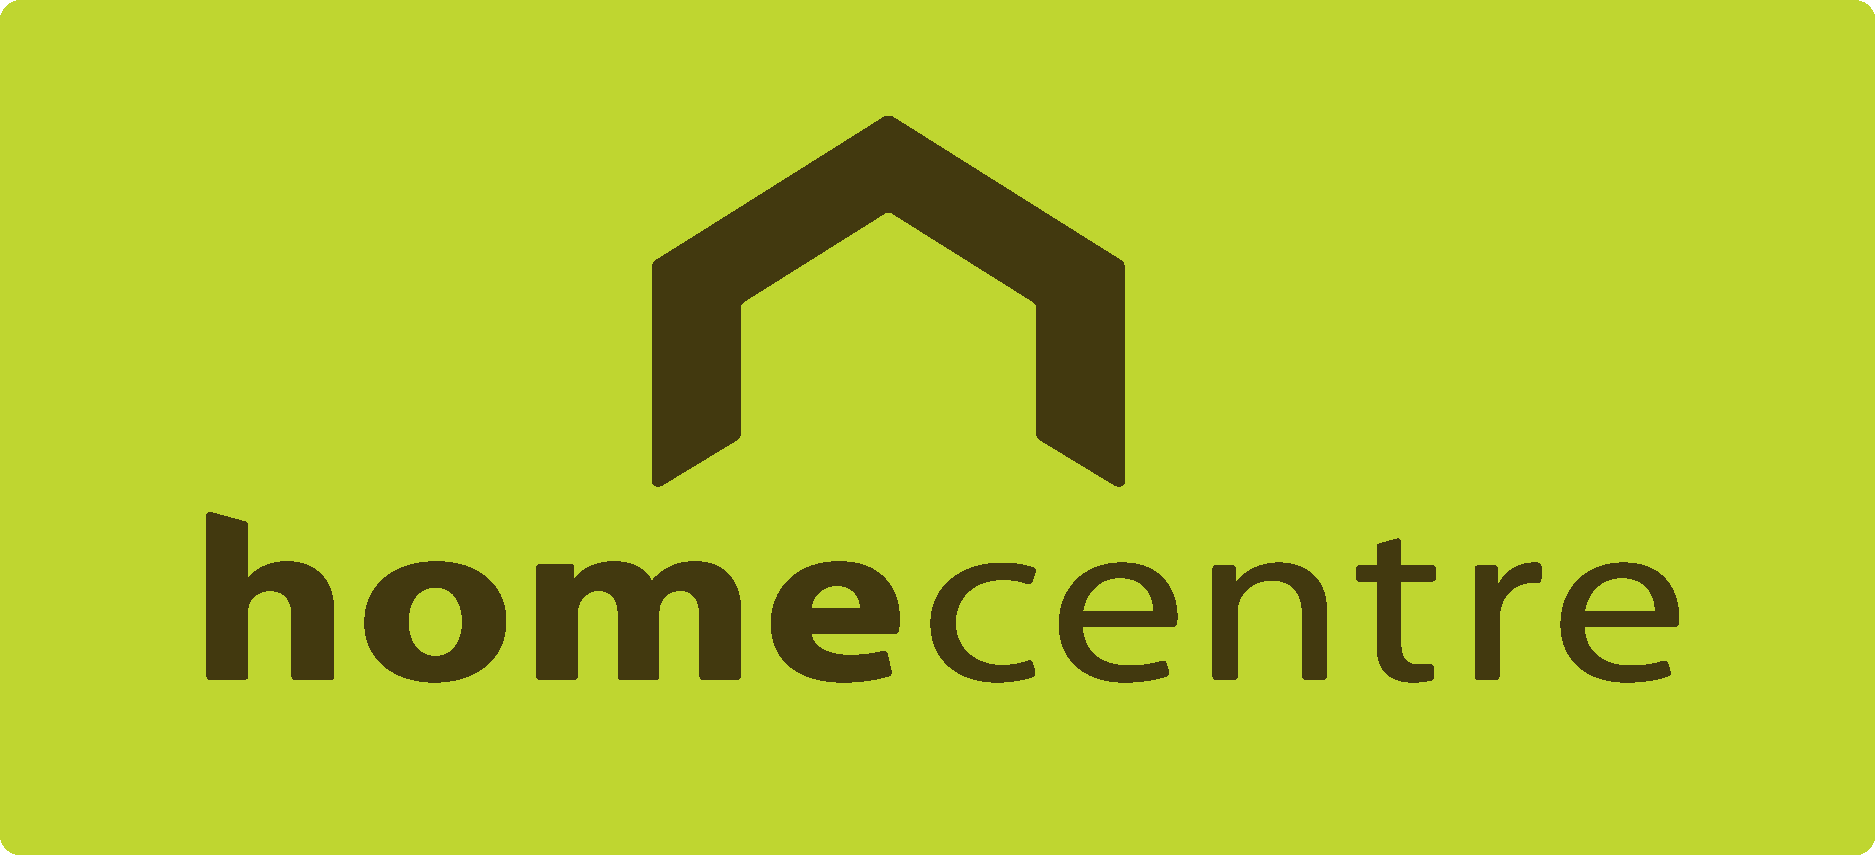 Home regions. Home Center. Logo Home Centre. Myhome логотип. Home language Centre logo.